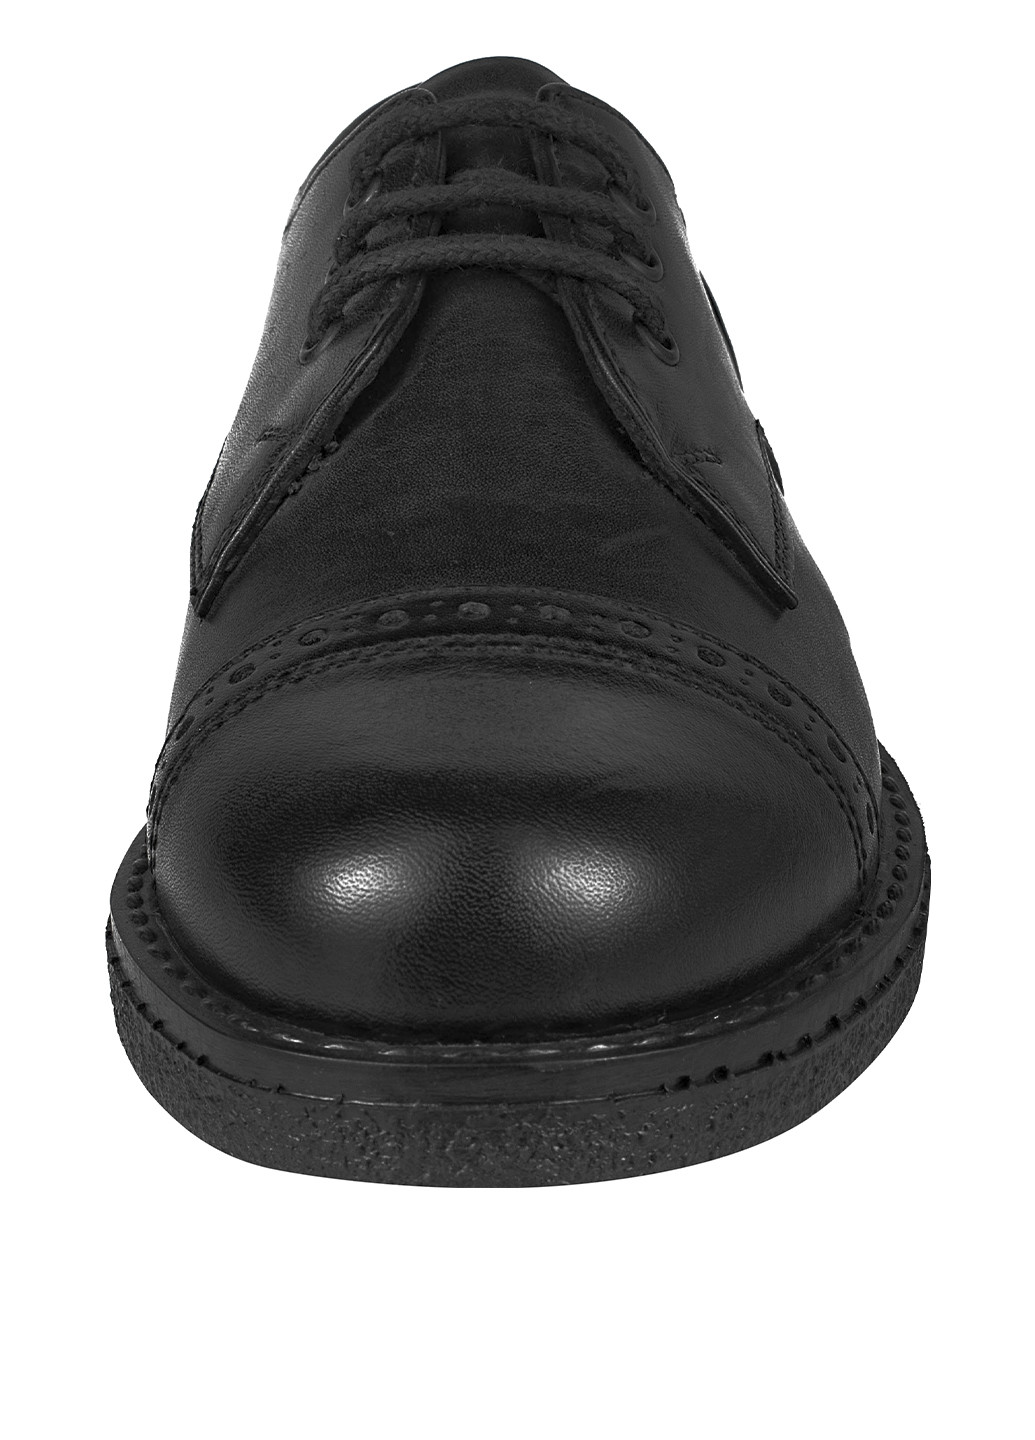 Черные туфли со шнурками Miracle